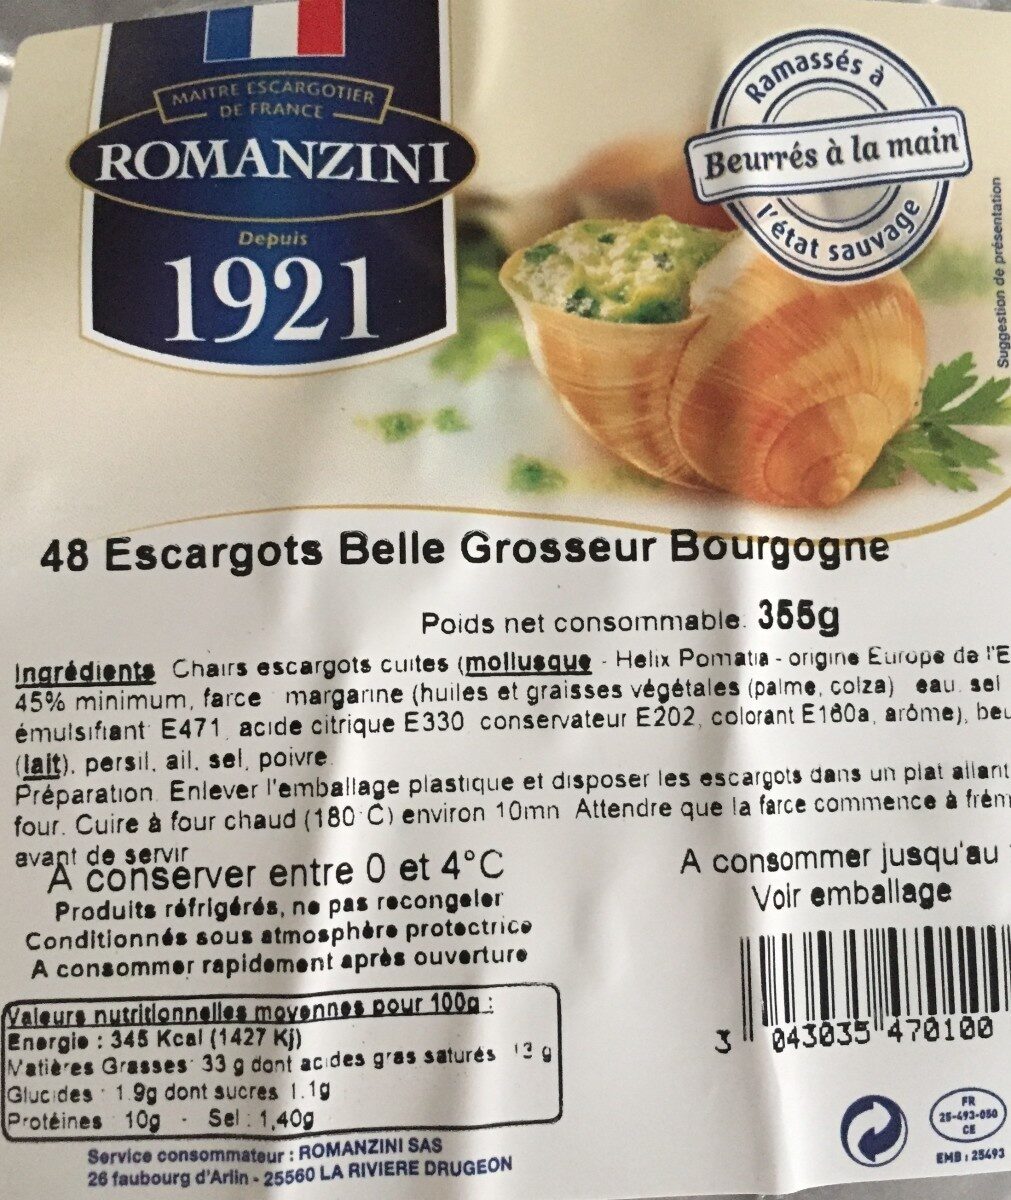 Escargot belle grosseur bourgogne - Produkt - fr